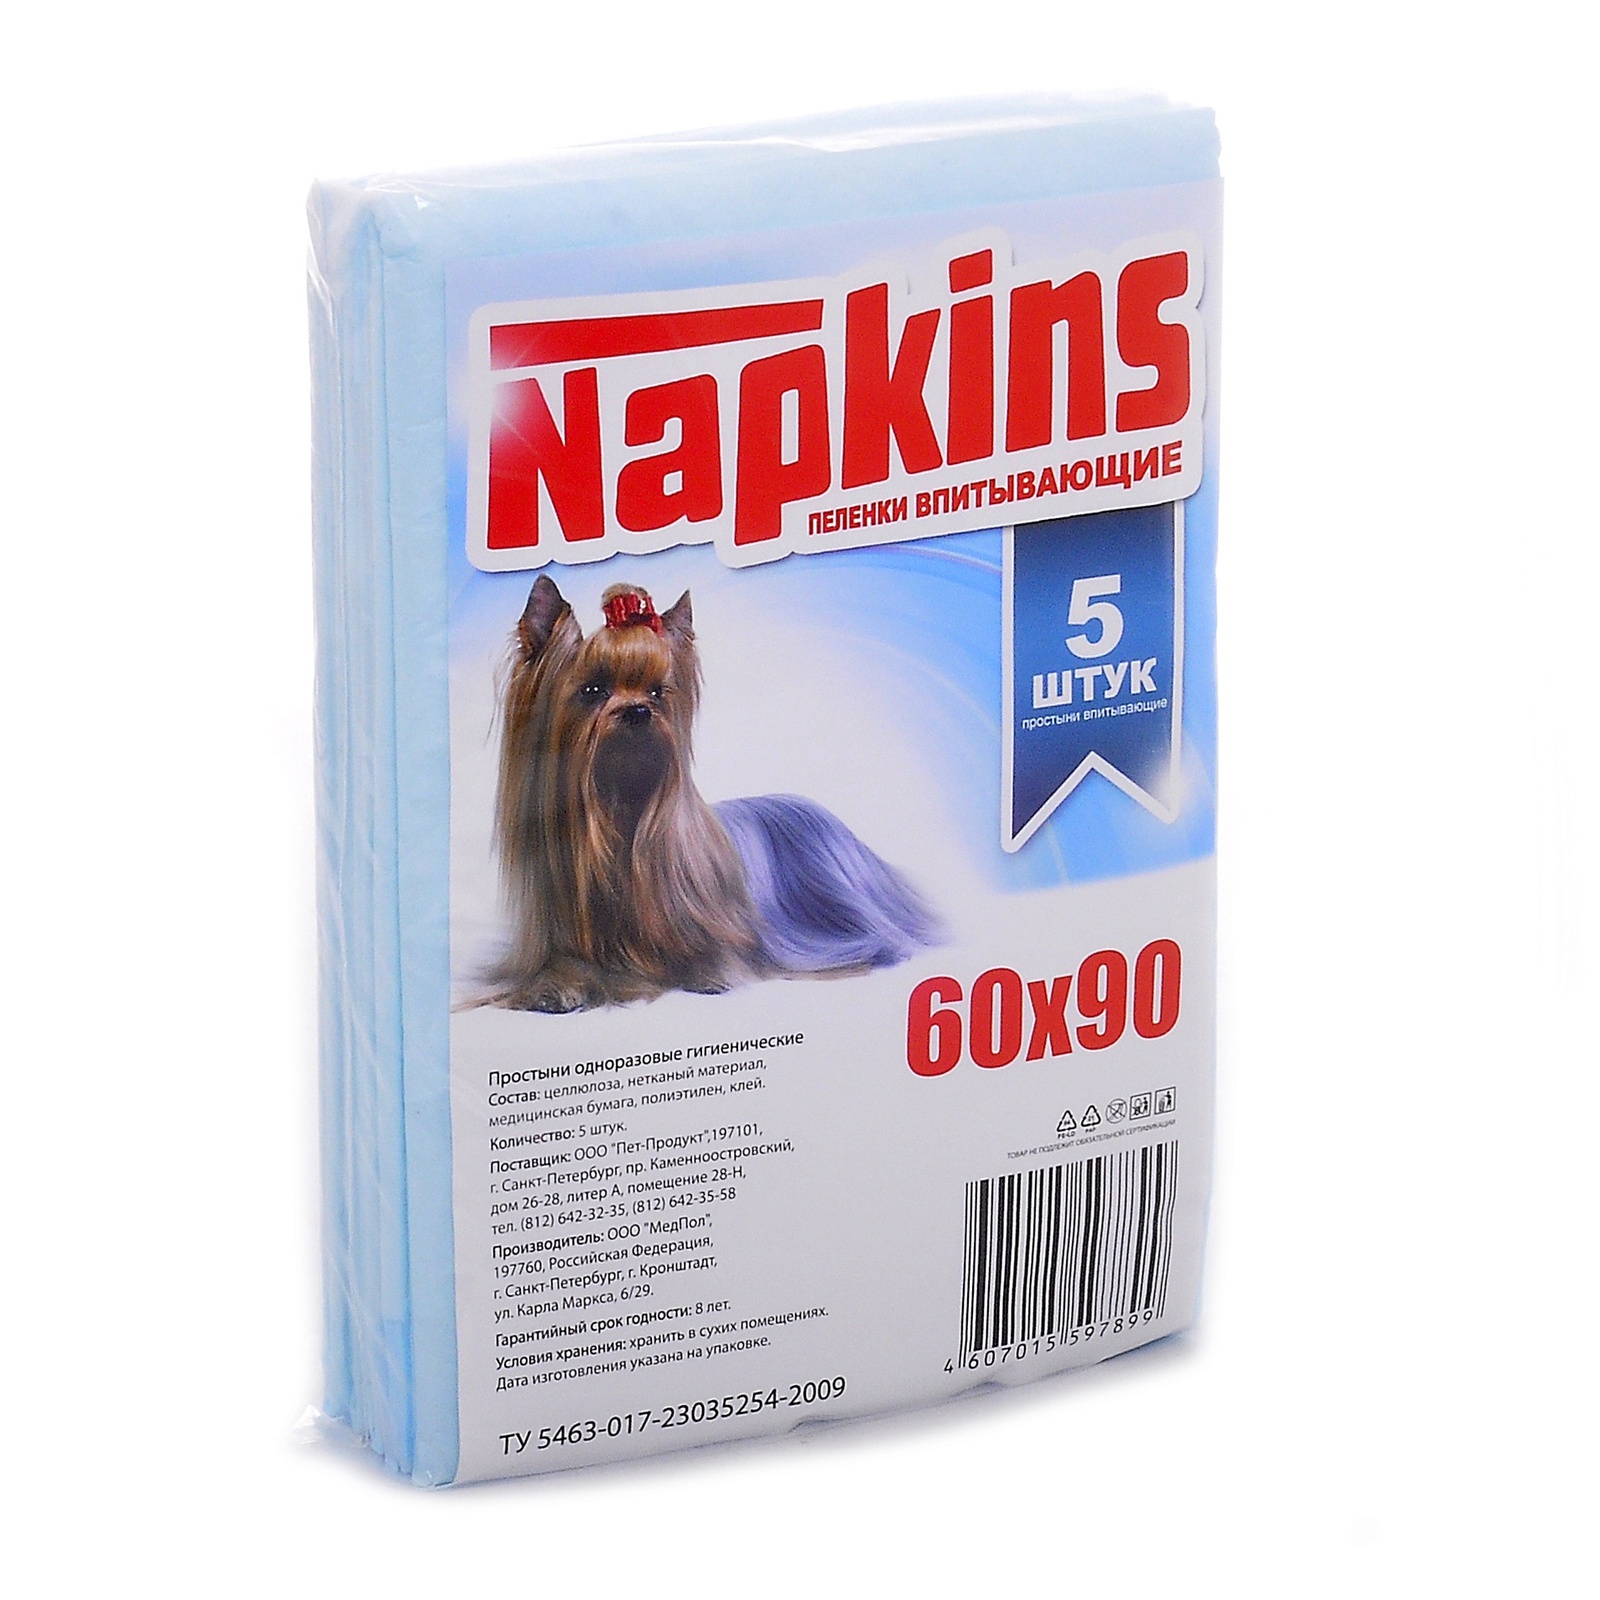 NAPKINS пеленки впитывающие пеленки для собак 60x90 (100 г)